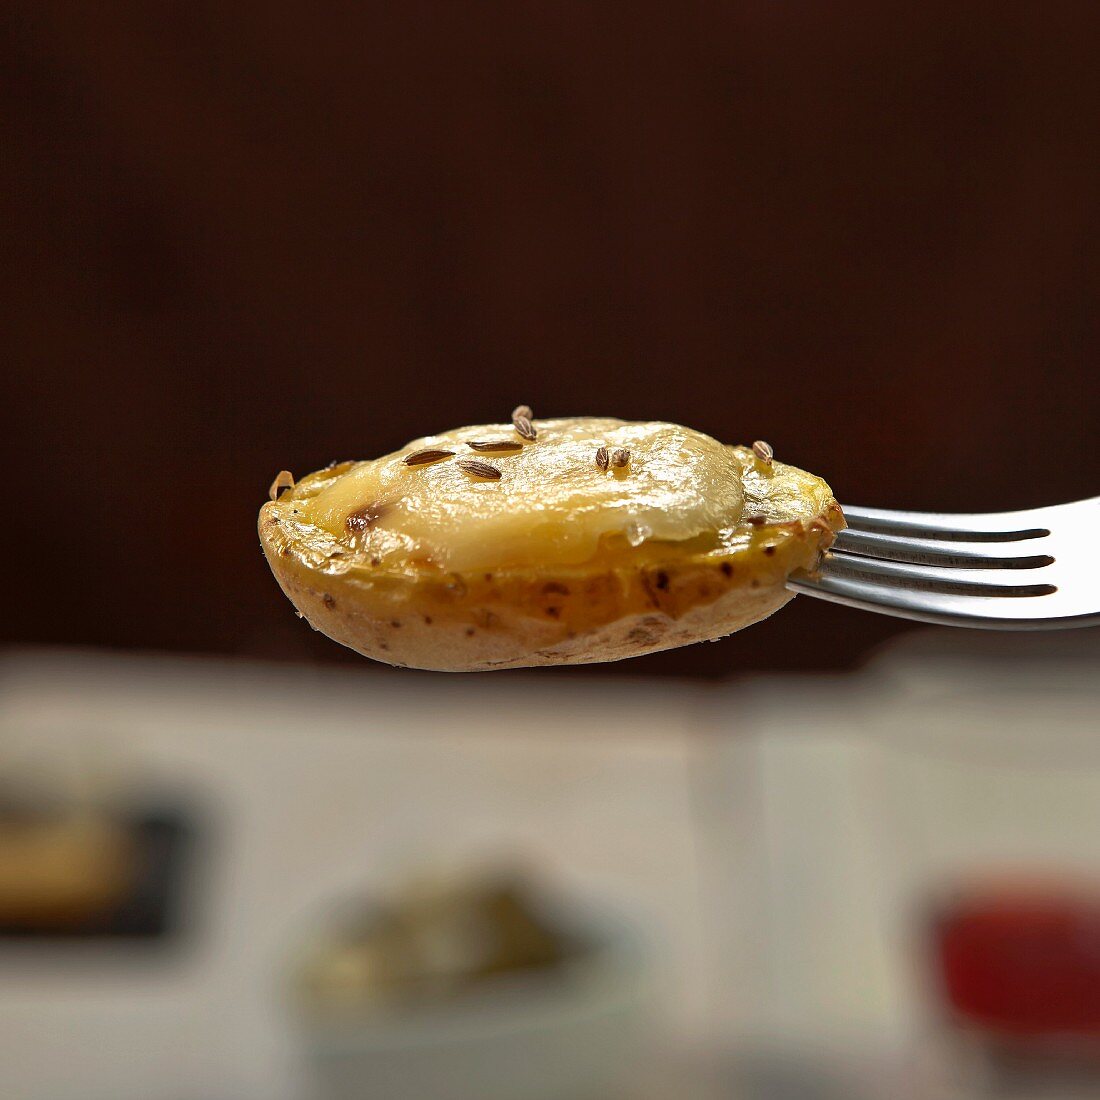 Raclette: Halbe Kartoffel mit geschmolzenem Käse